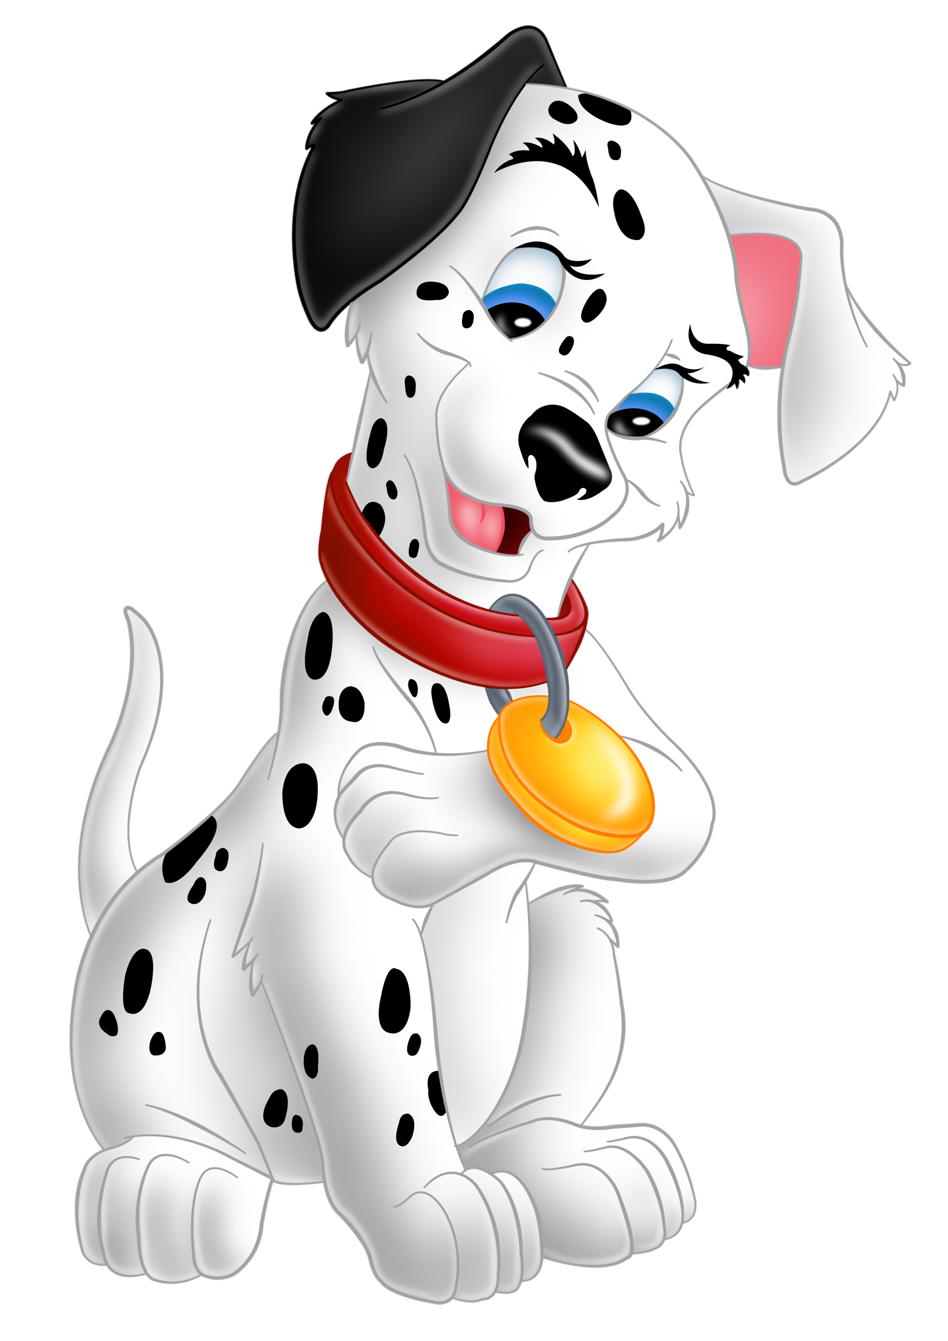 And Cute 101 Dalmatians De Dog Vil PNG Image